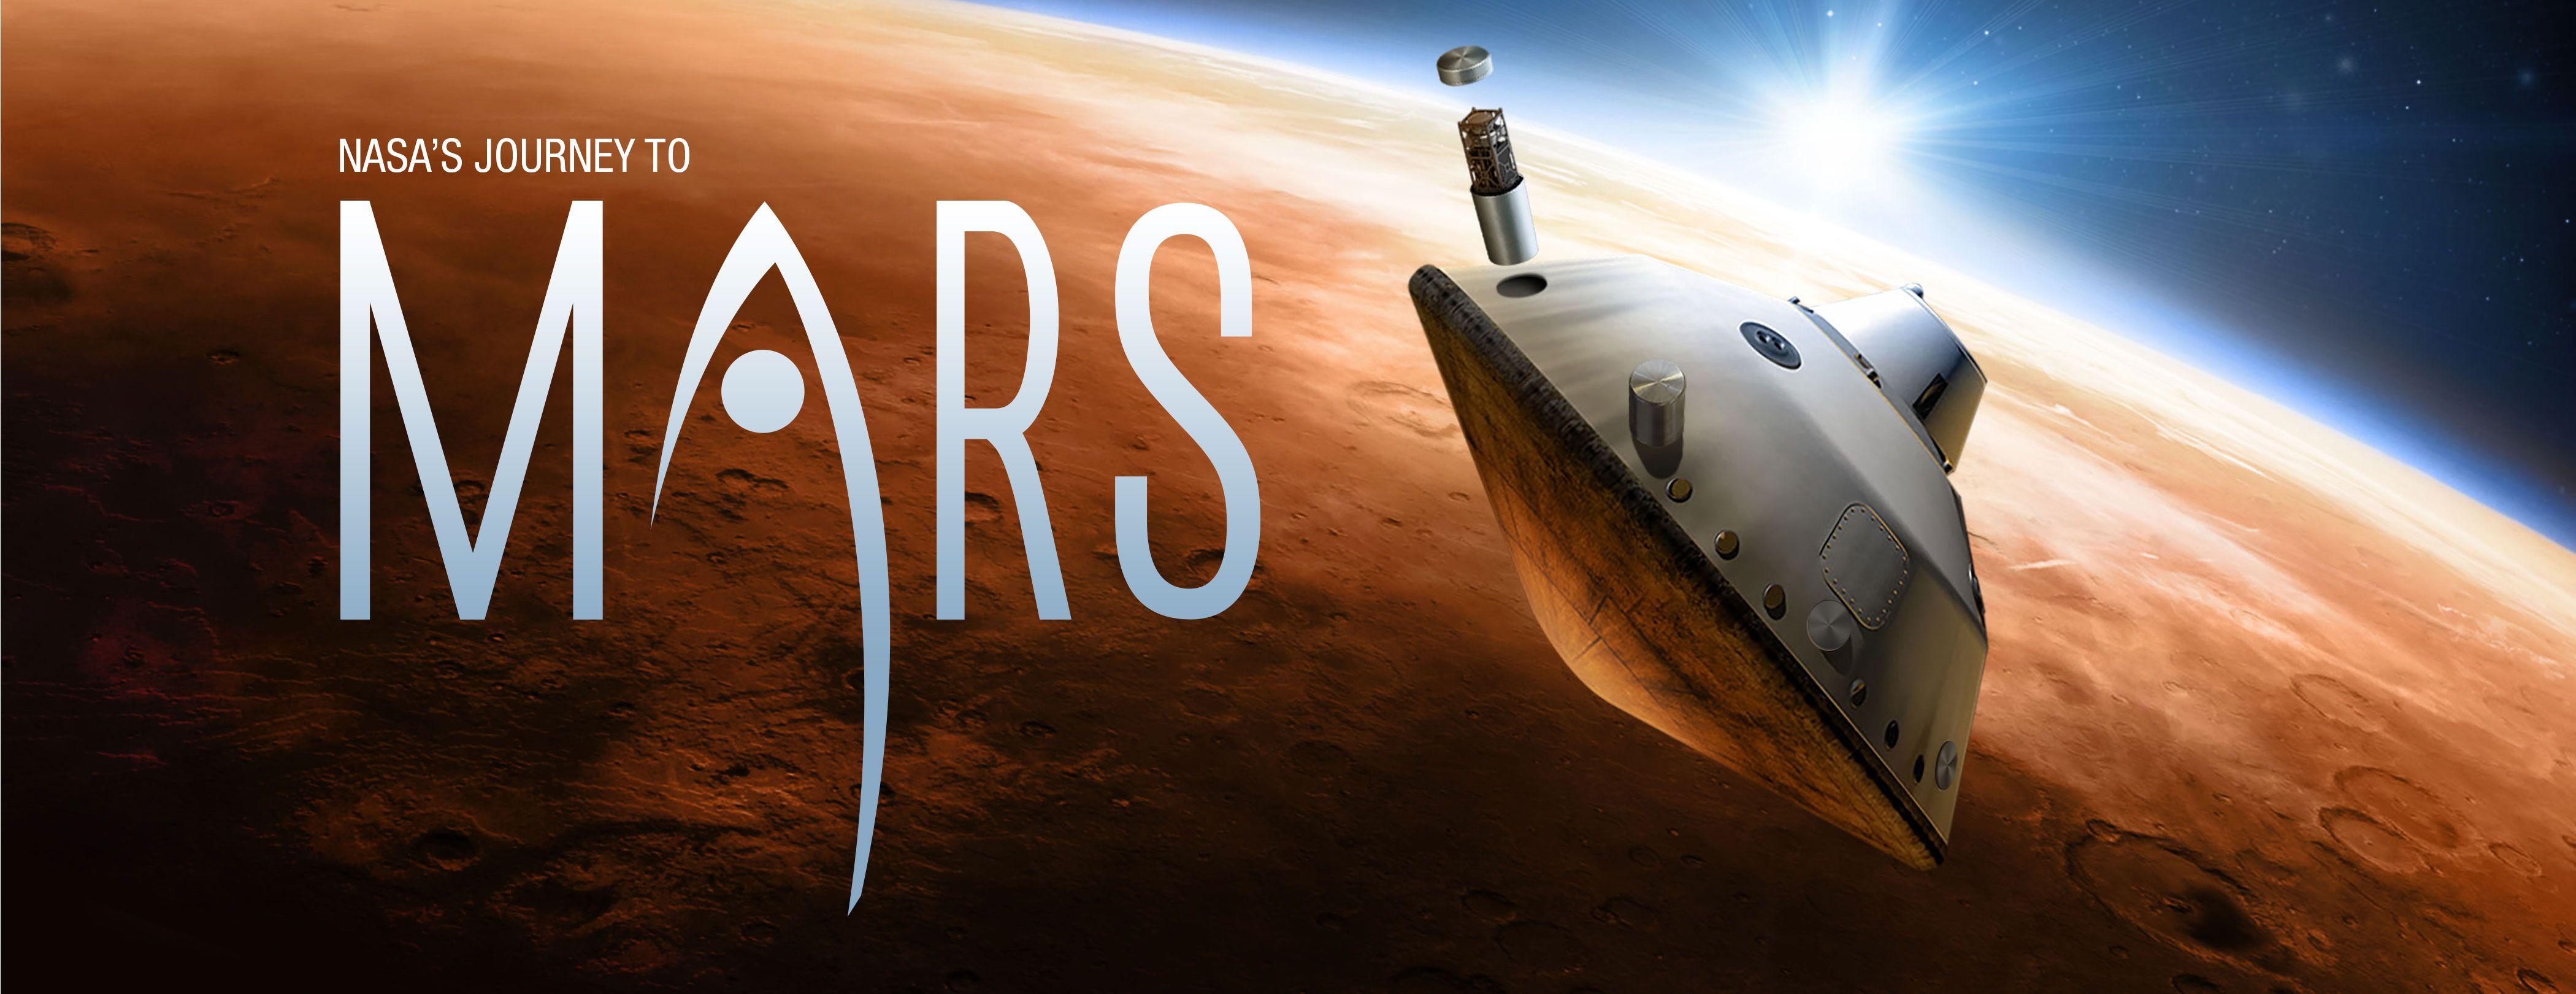 NASA Mars Logo - journey-of-a-lifetime-mars-header.jpg – NASA's Mars Exploration Program